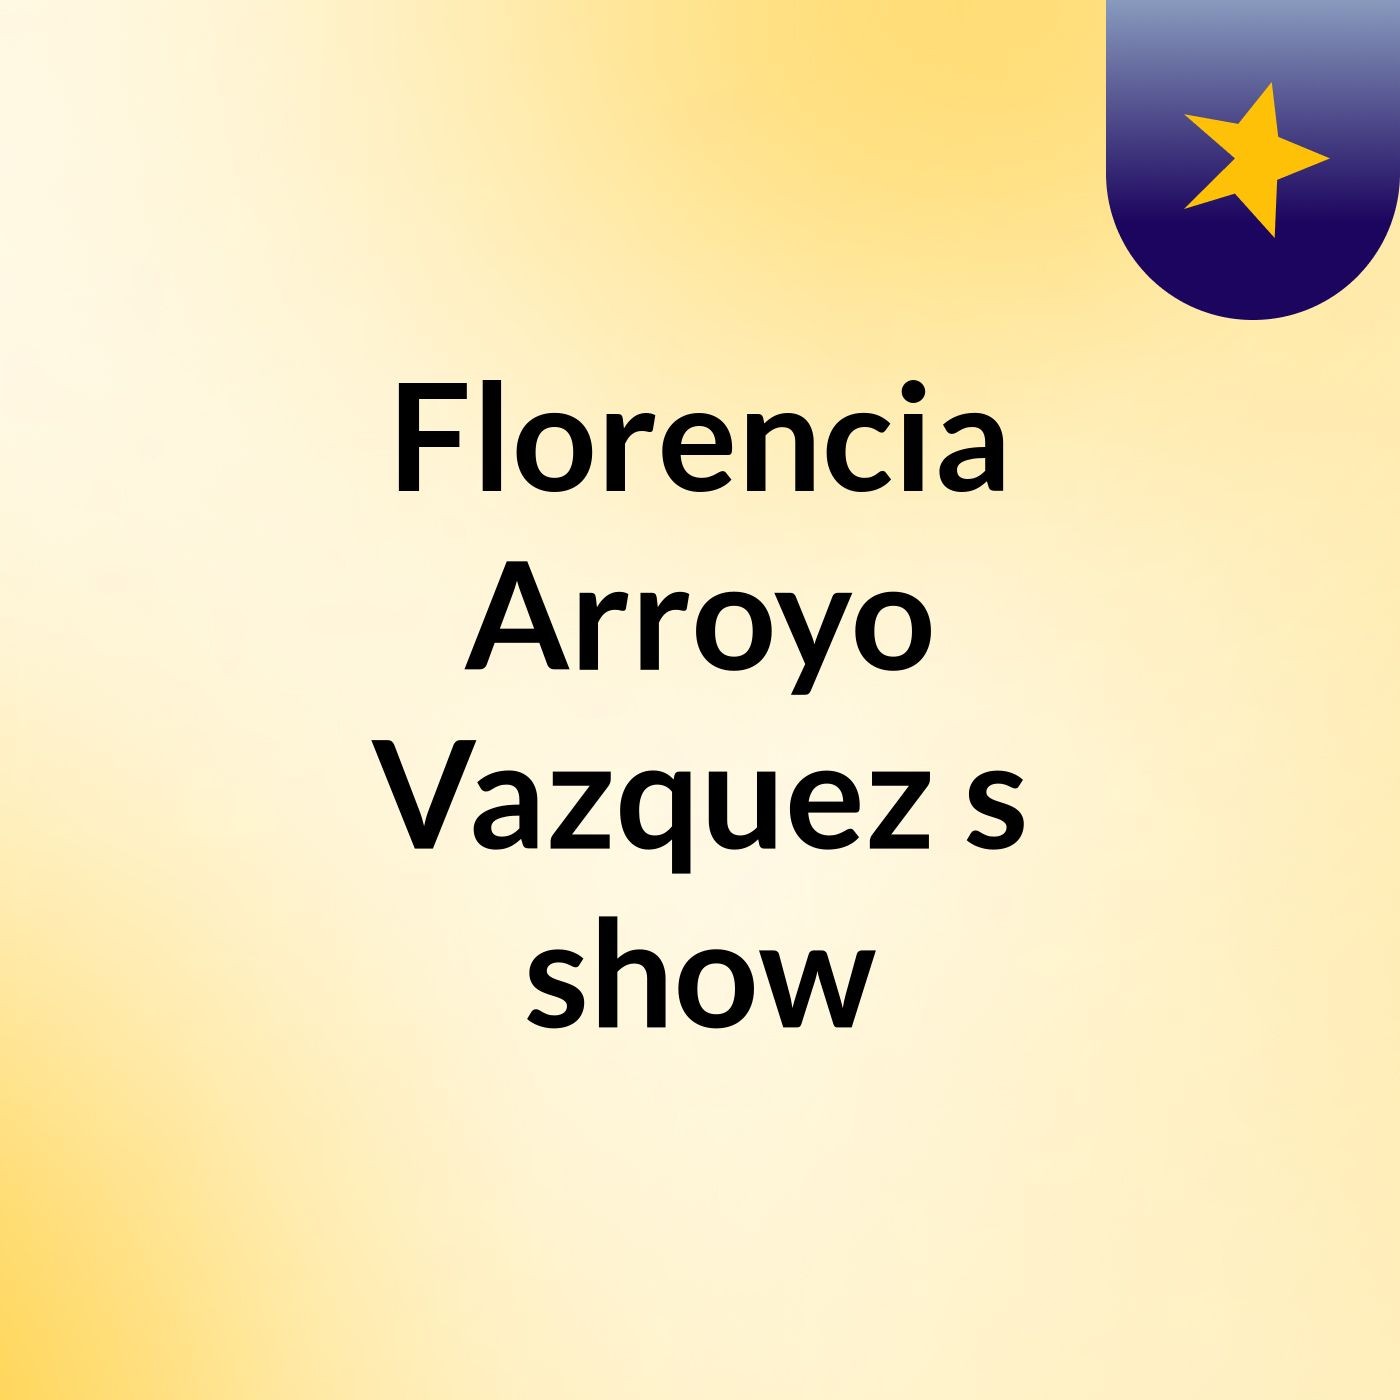 Florencia Arroyo Vazquez's show